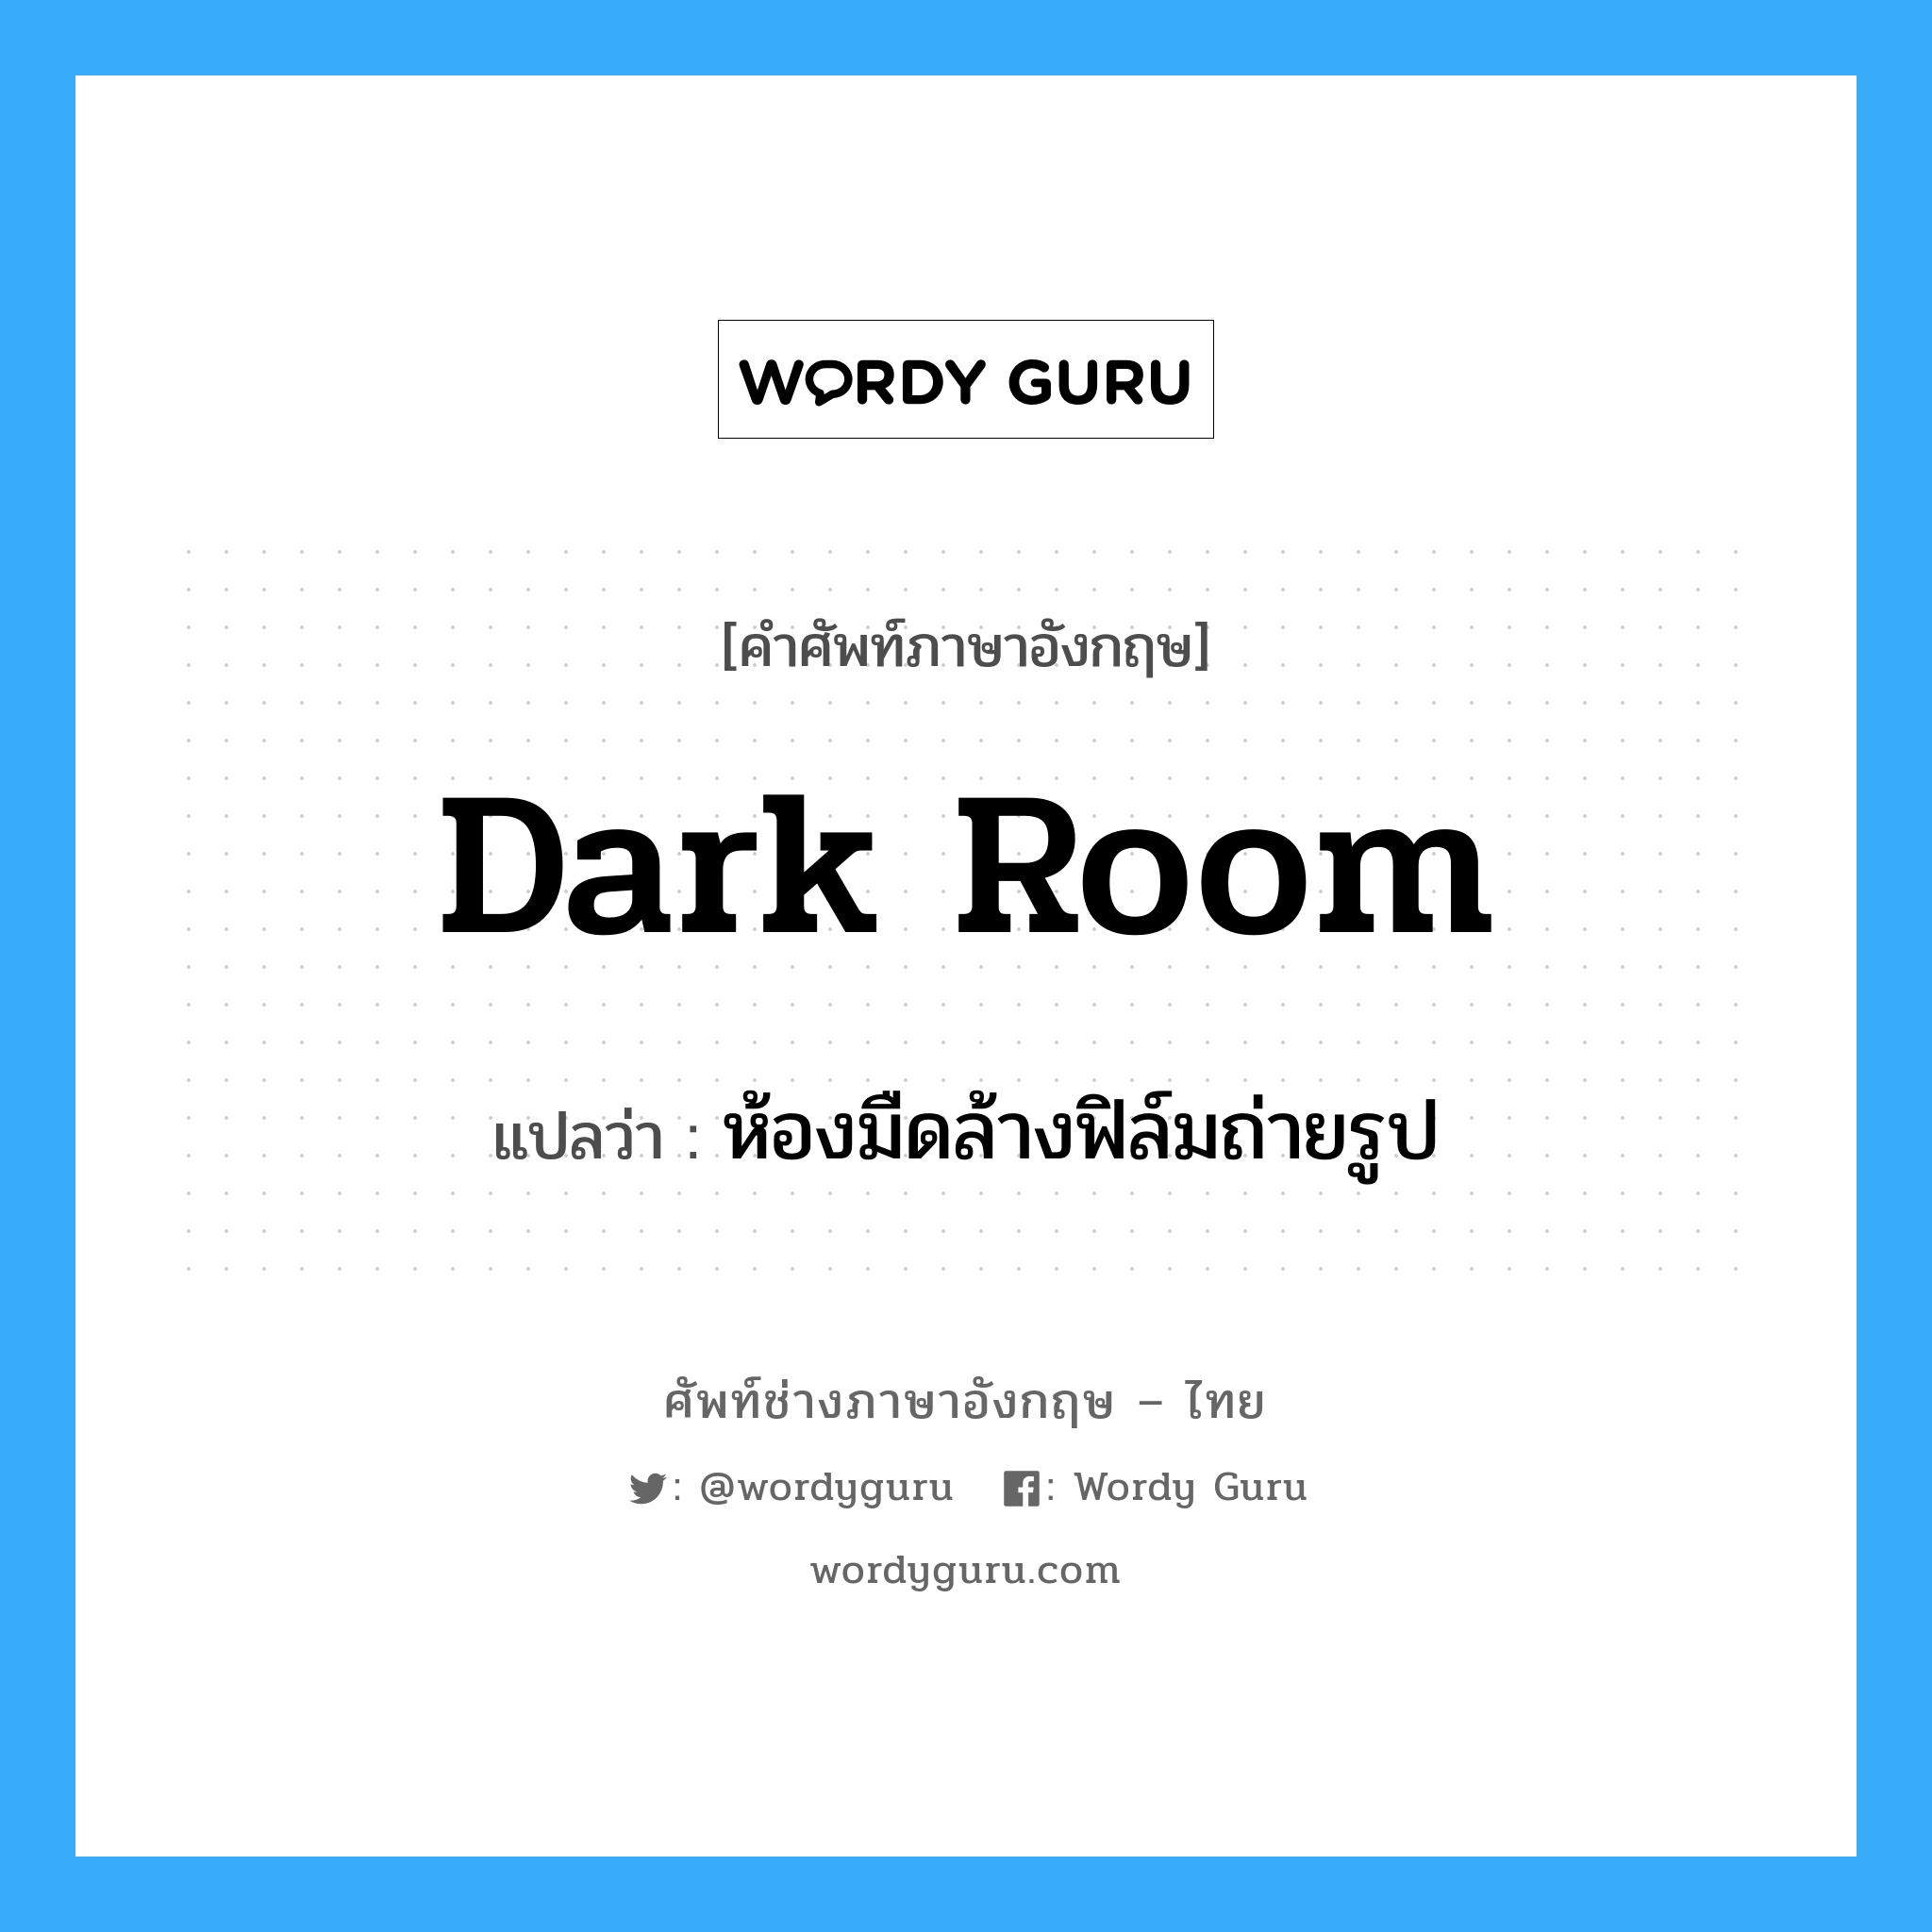 ห้องมืดล้างฟิล์มถ่ายรูป ภาษาอังกฤษ?, คำศัพท์ช่างภาษาอังกฤษ - ไทย ห้องมืดล้างฟิล์มถ่ายรูป คำศัพท์ภาษาอังกฤษ ห้องมืดล้างฟิล์มถ่ายรูป แปลว่า dark room